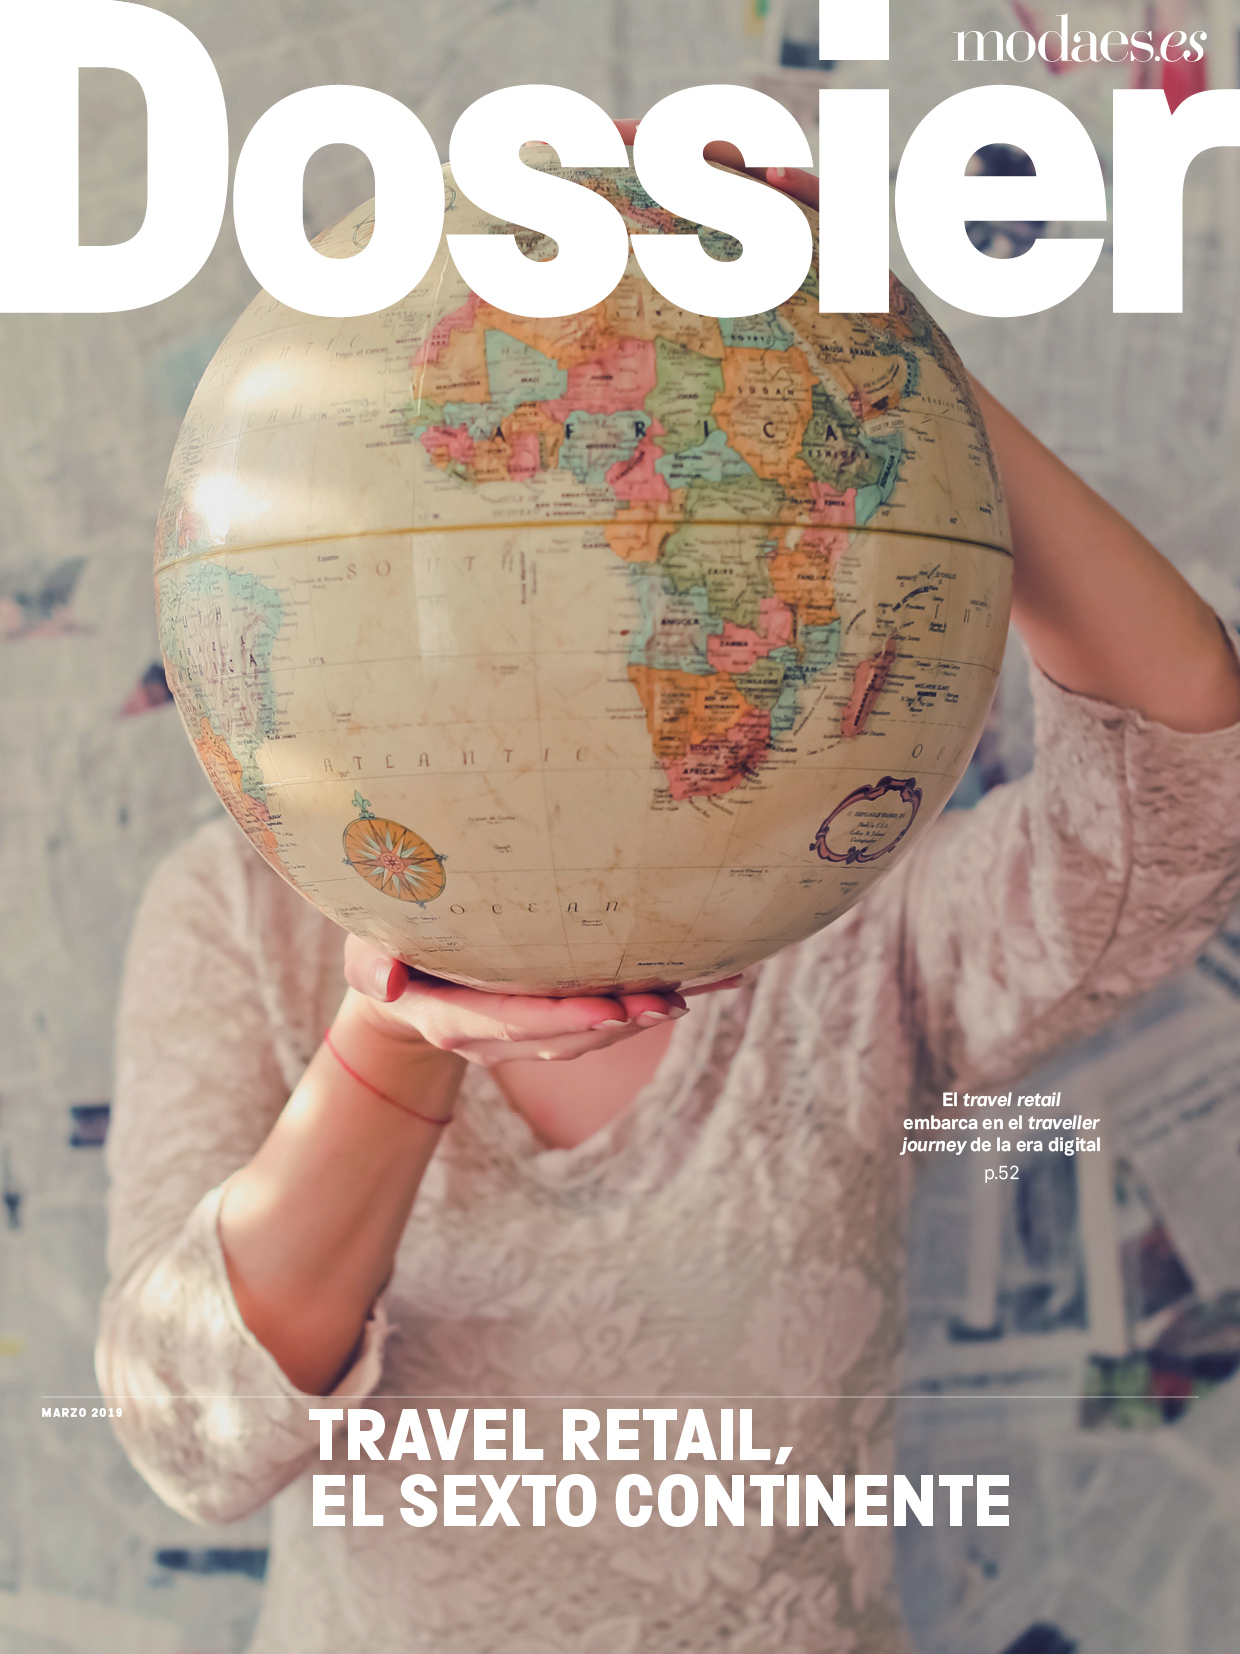 Modaes.es Dossier - Travel retail, el sexto continente